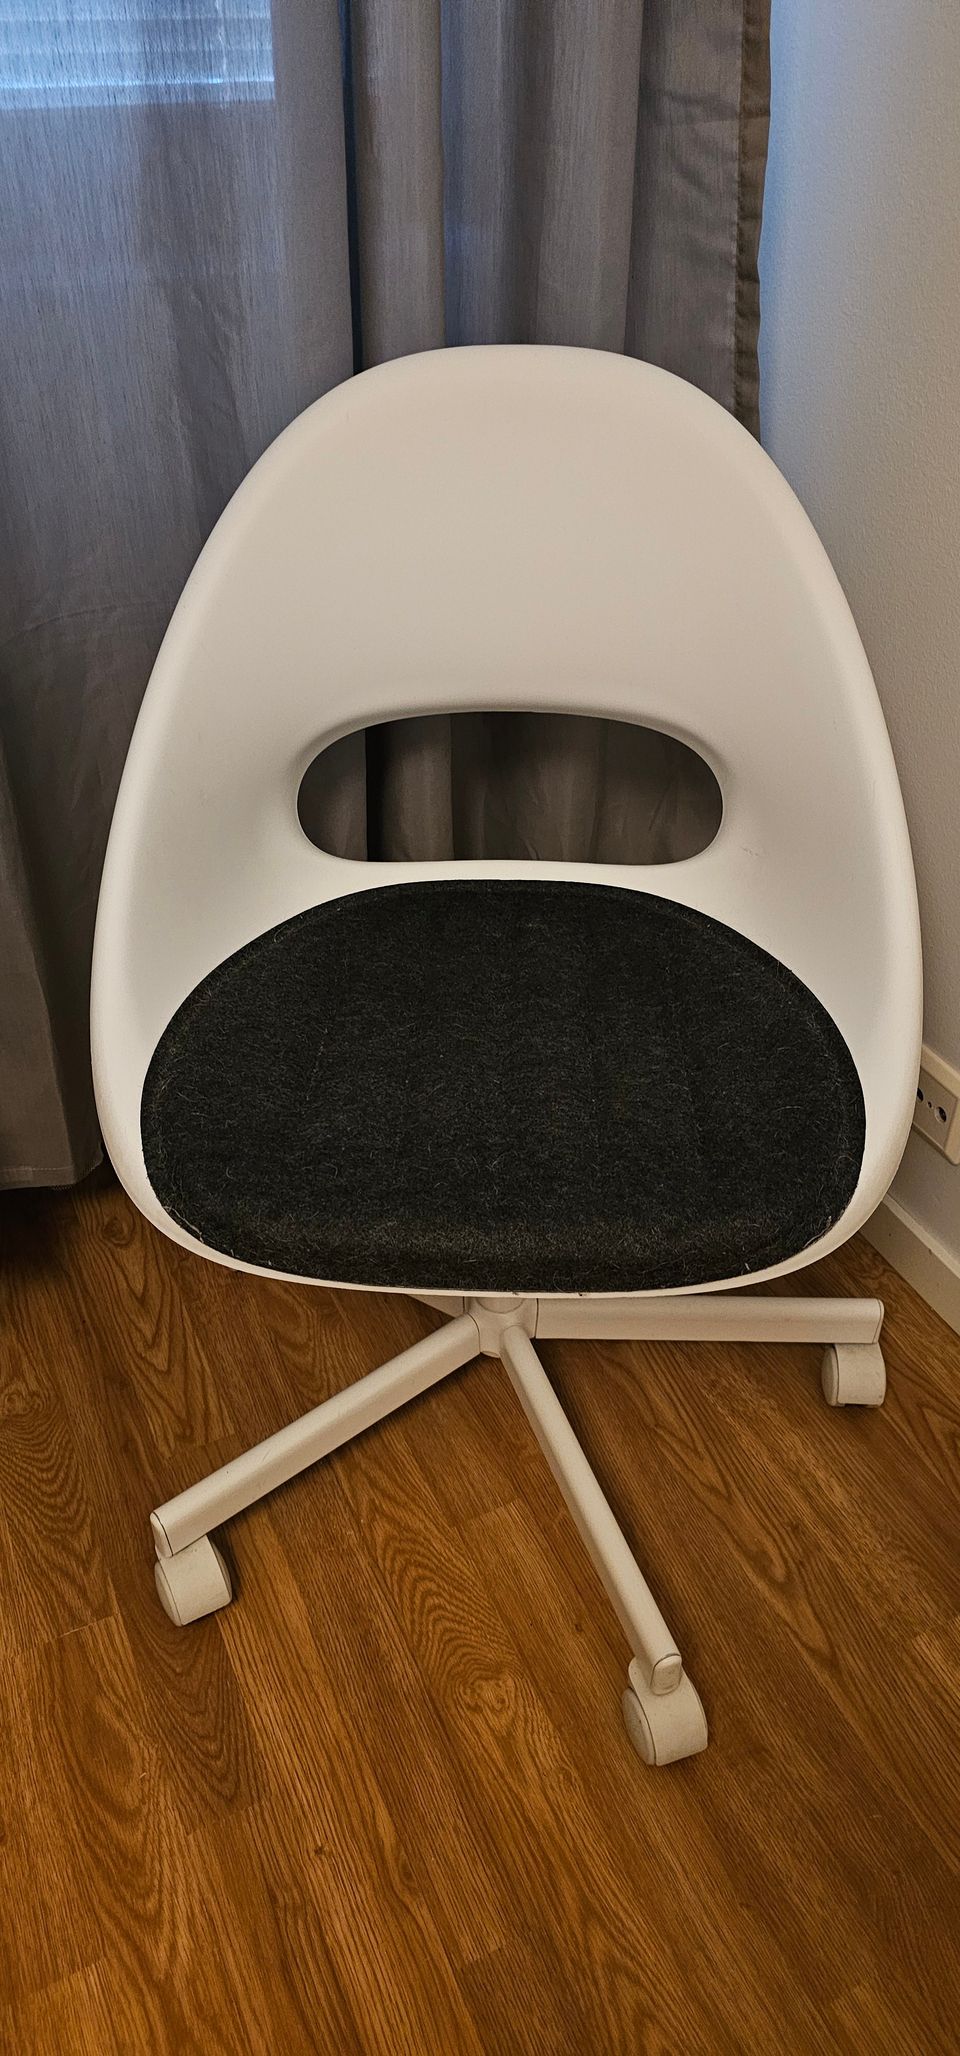 IKEA Työtuoli- Desk chair